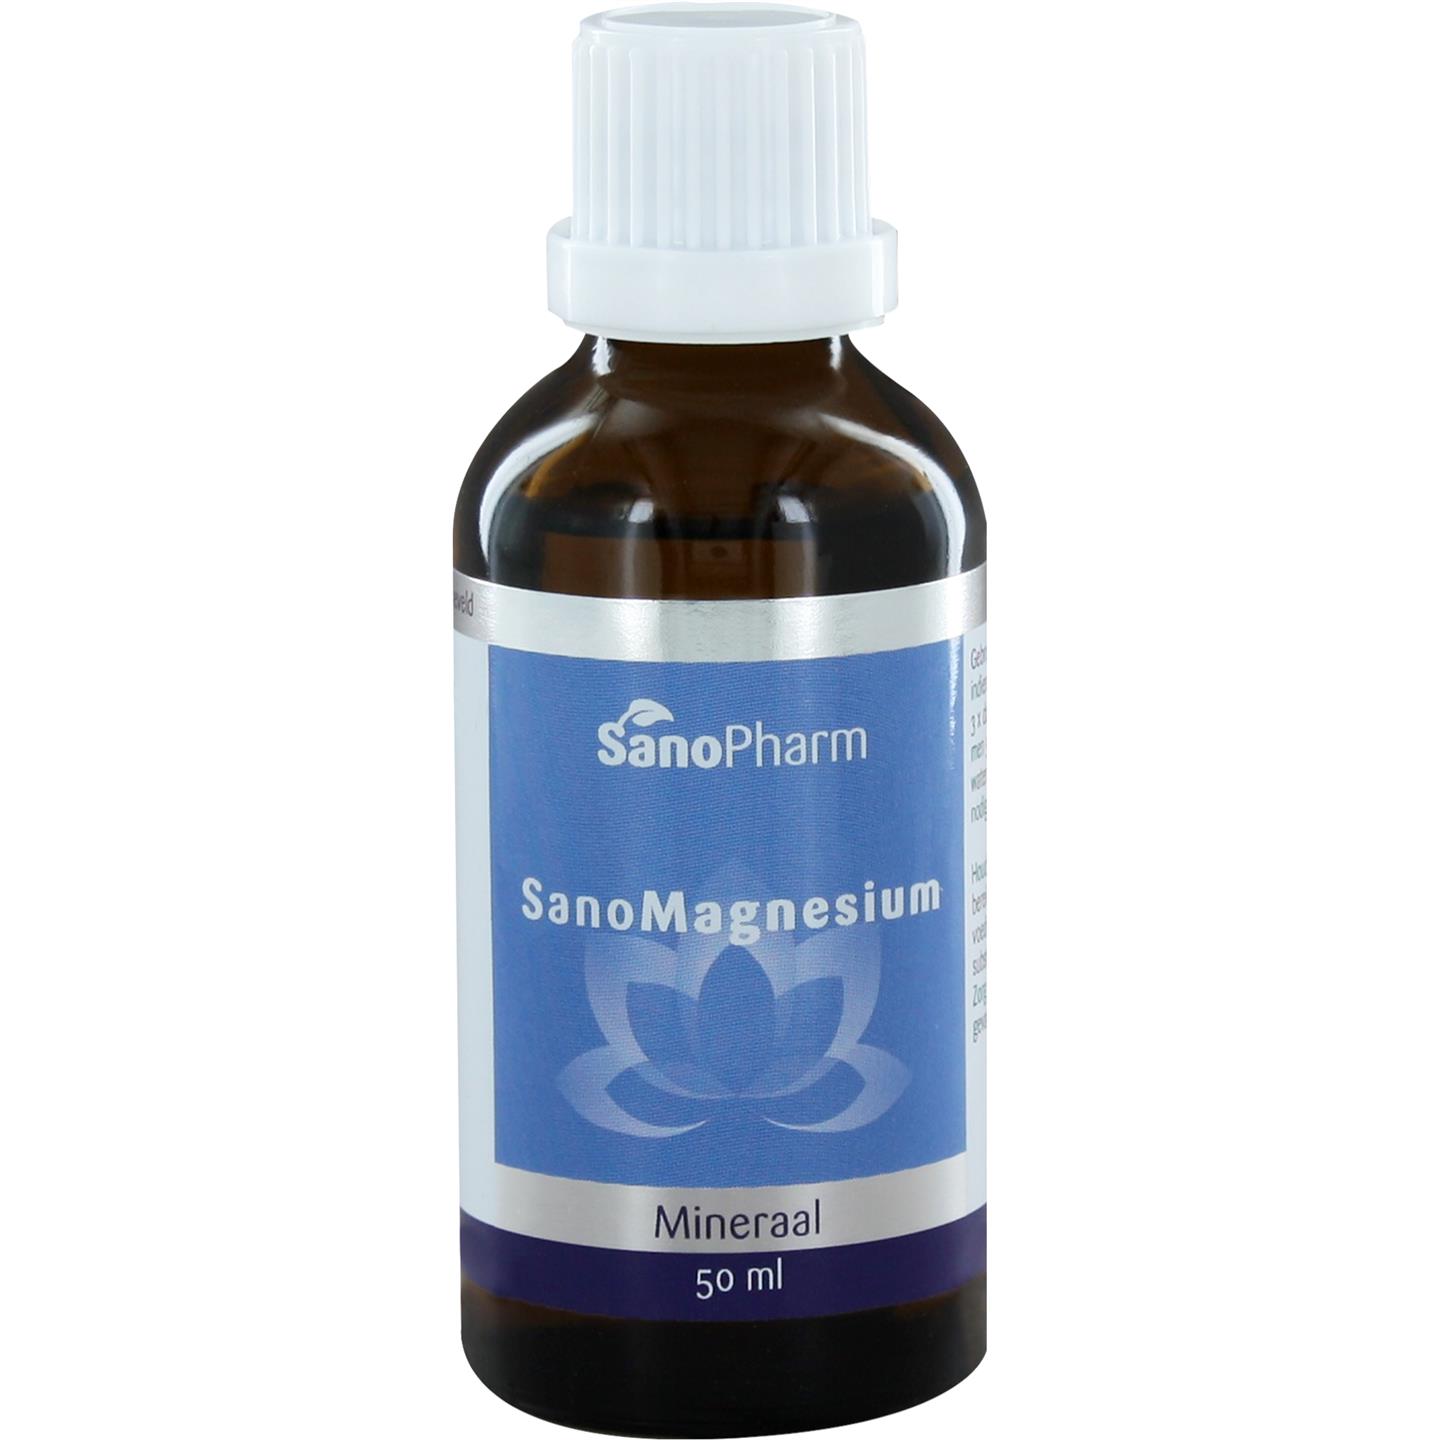 SanoMagnesium